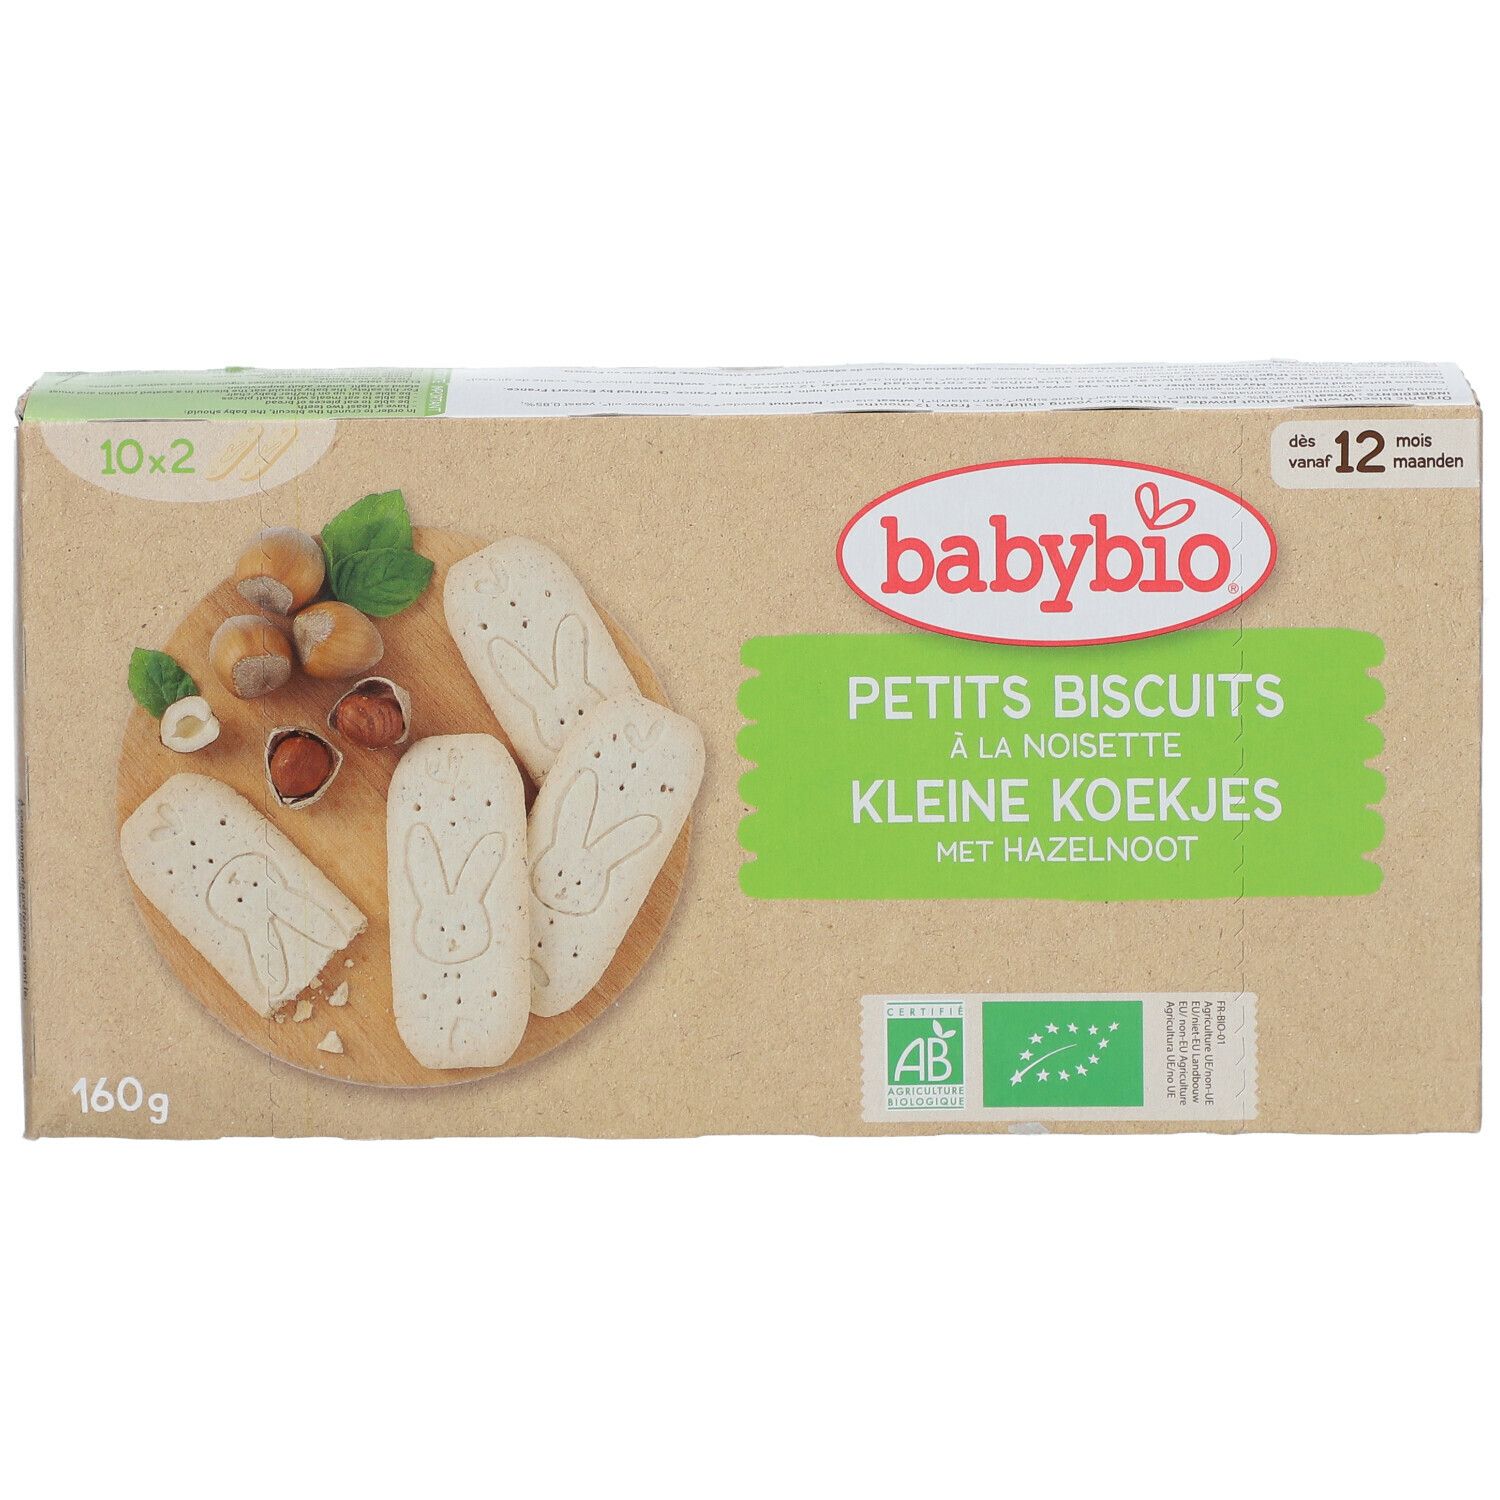 Biscuits Bébé - Noisette